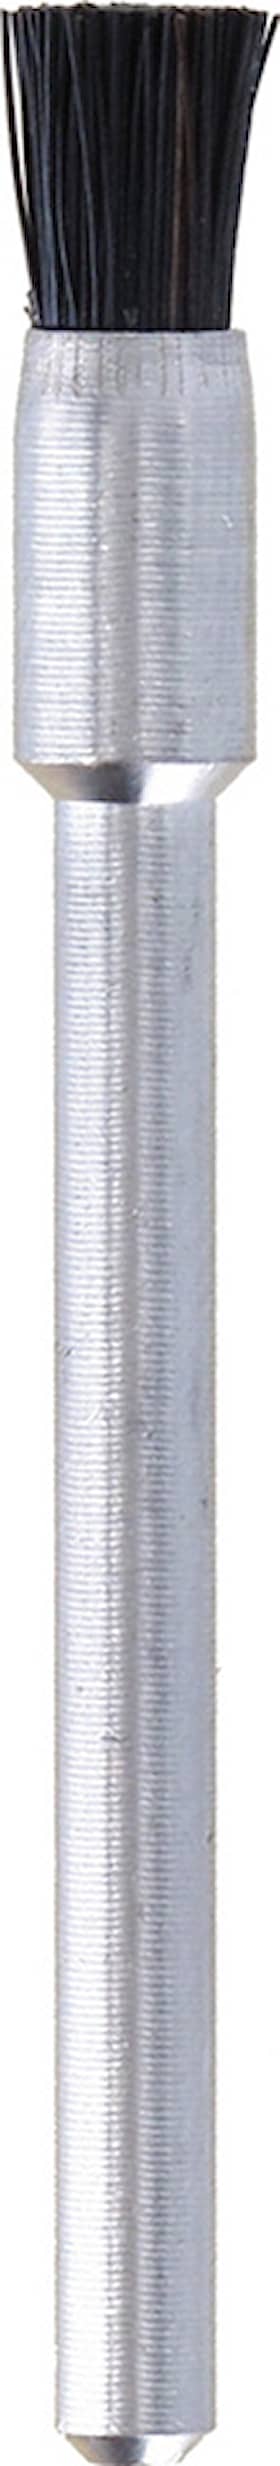 Dremel penselbørste 405ja 3,2 mm. 3 stk. pak Penselbørster